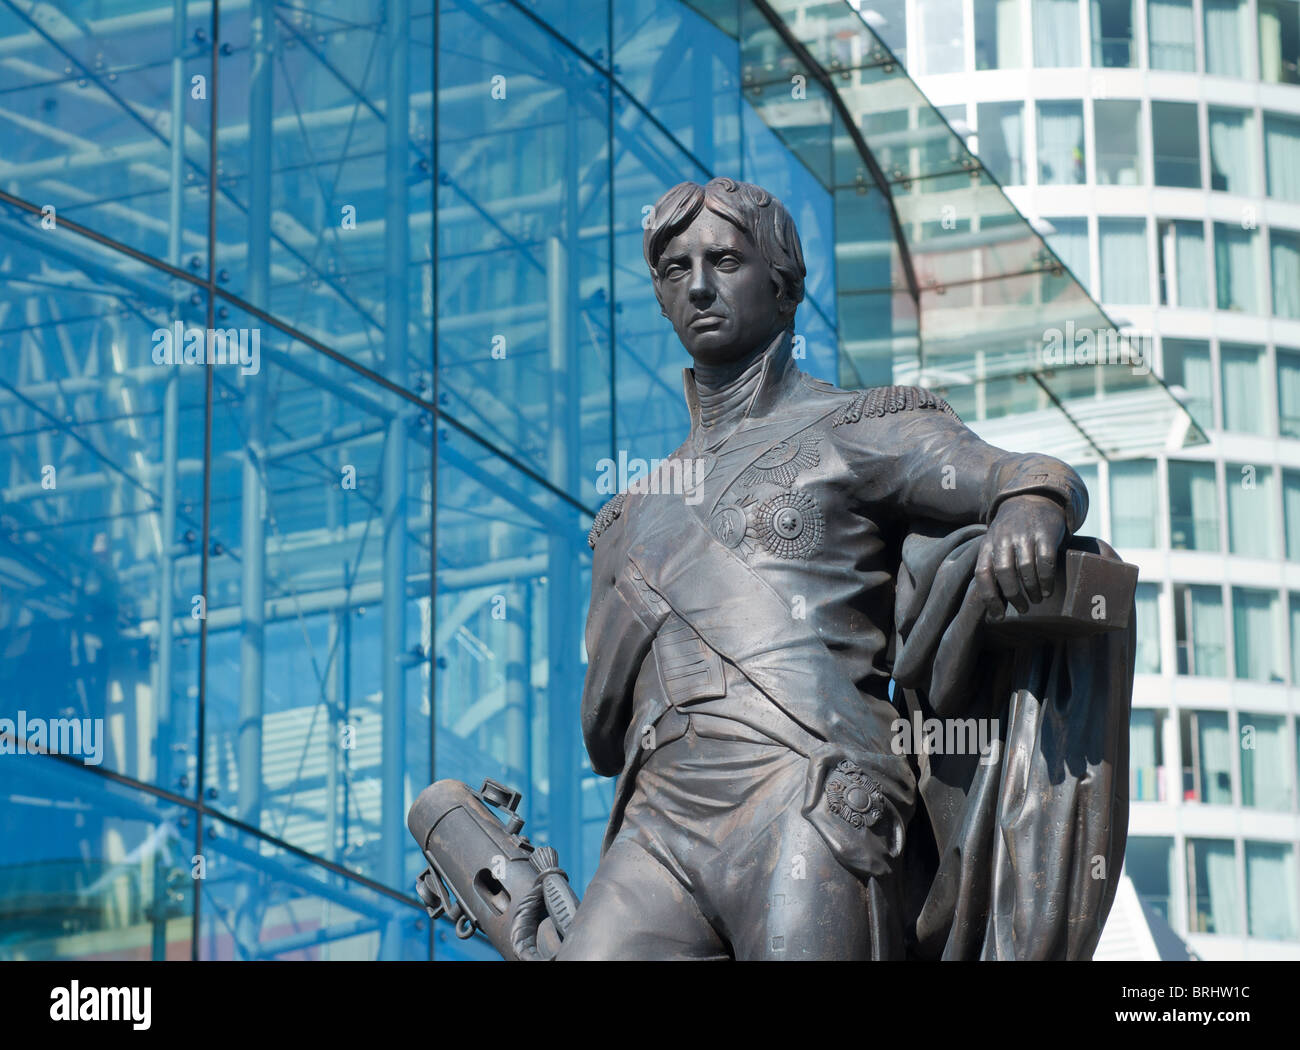 Statue en bronze de l'Amiral Nelson dans l'arène, Birmingham, Grande-Bretagne, 2010 Banque D'Images